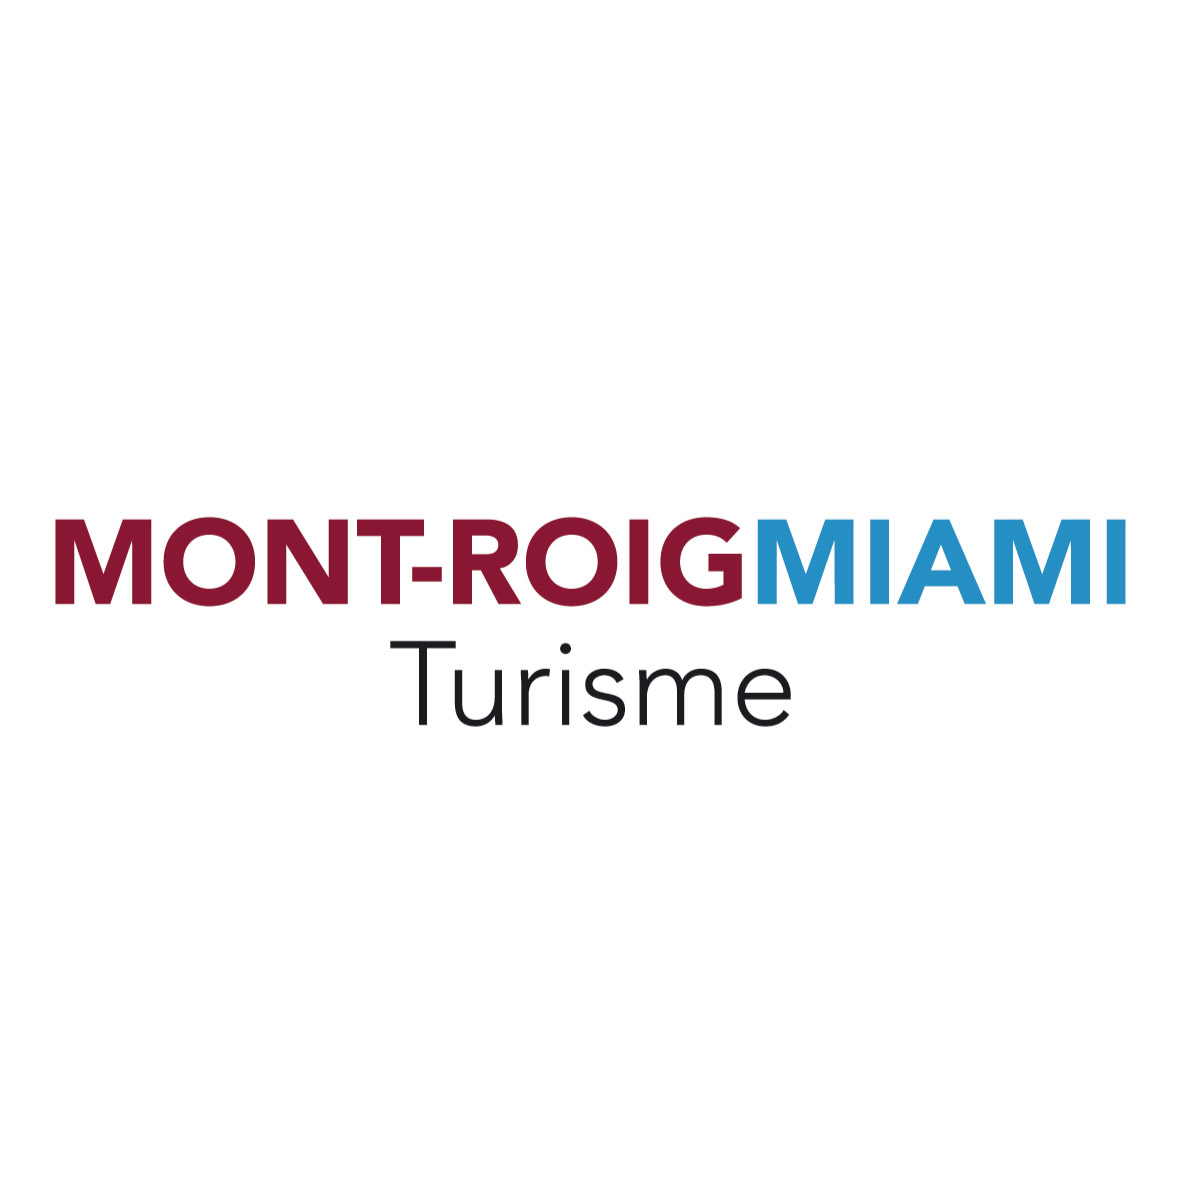 Mont-roig Miami Turisme